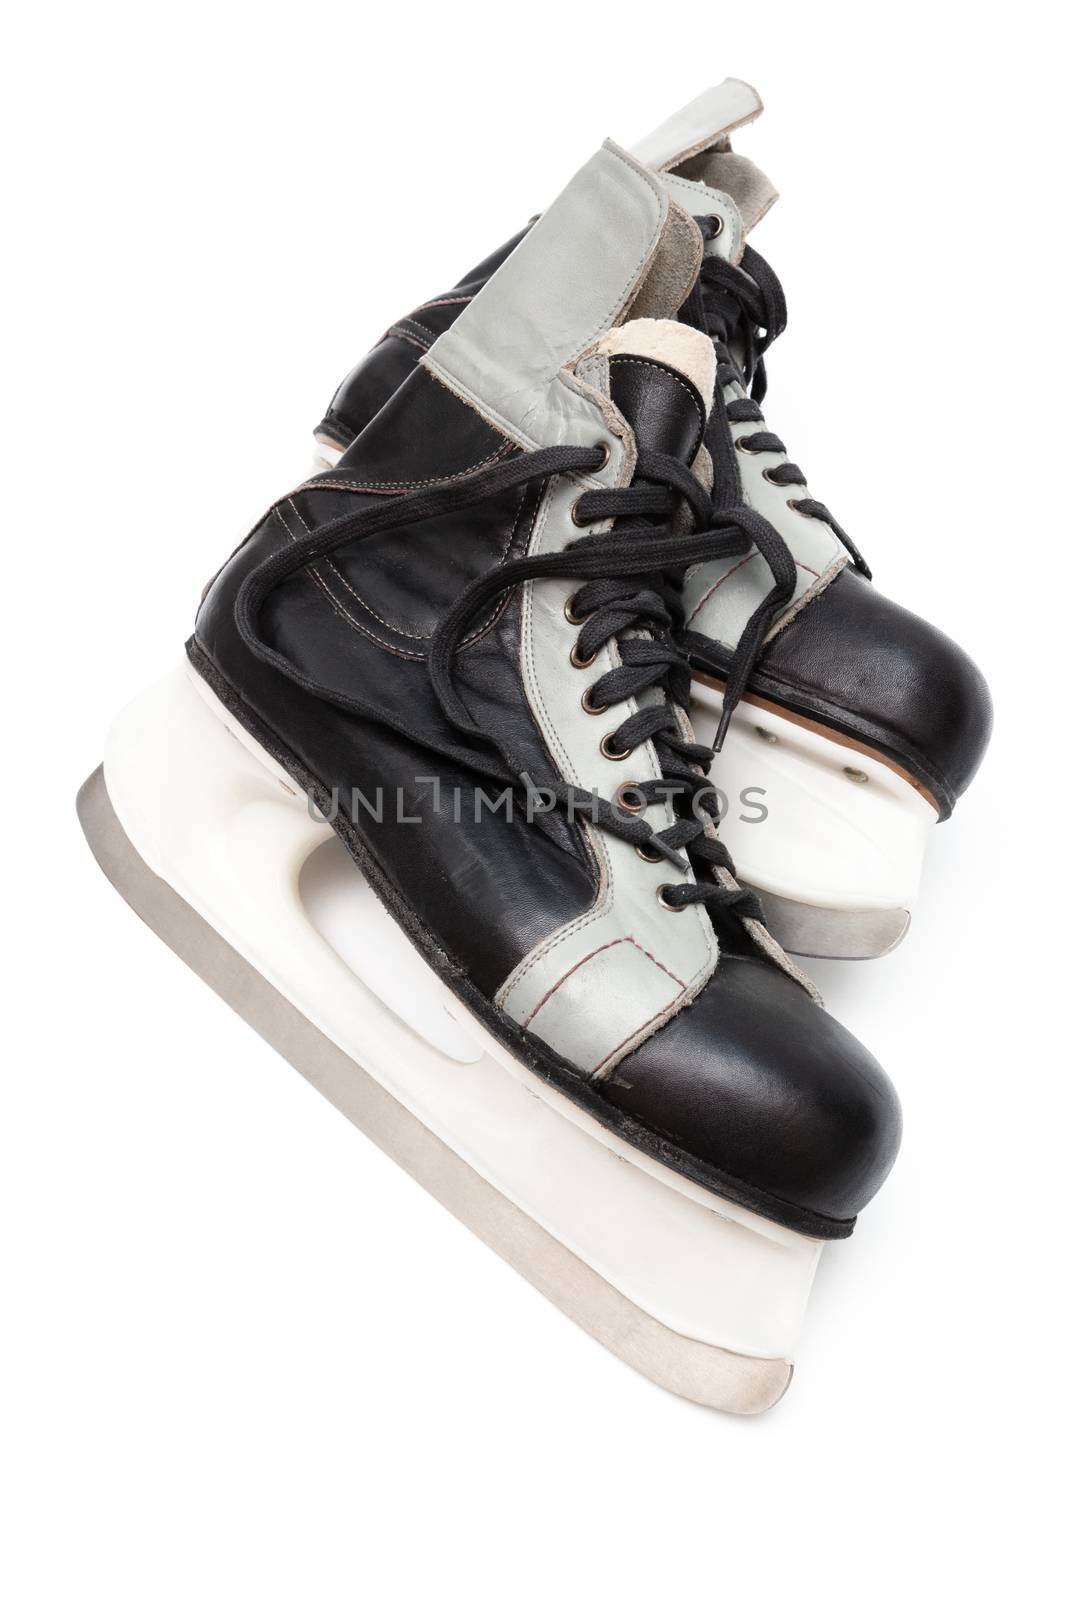 black skates by terex